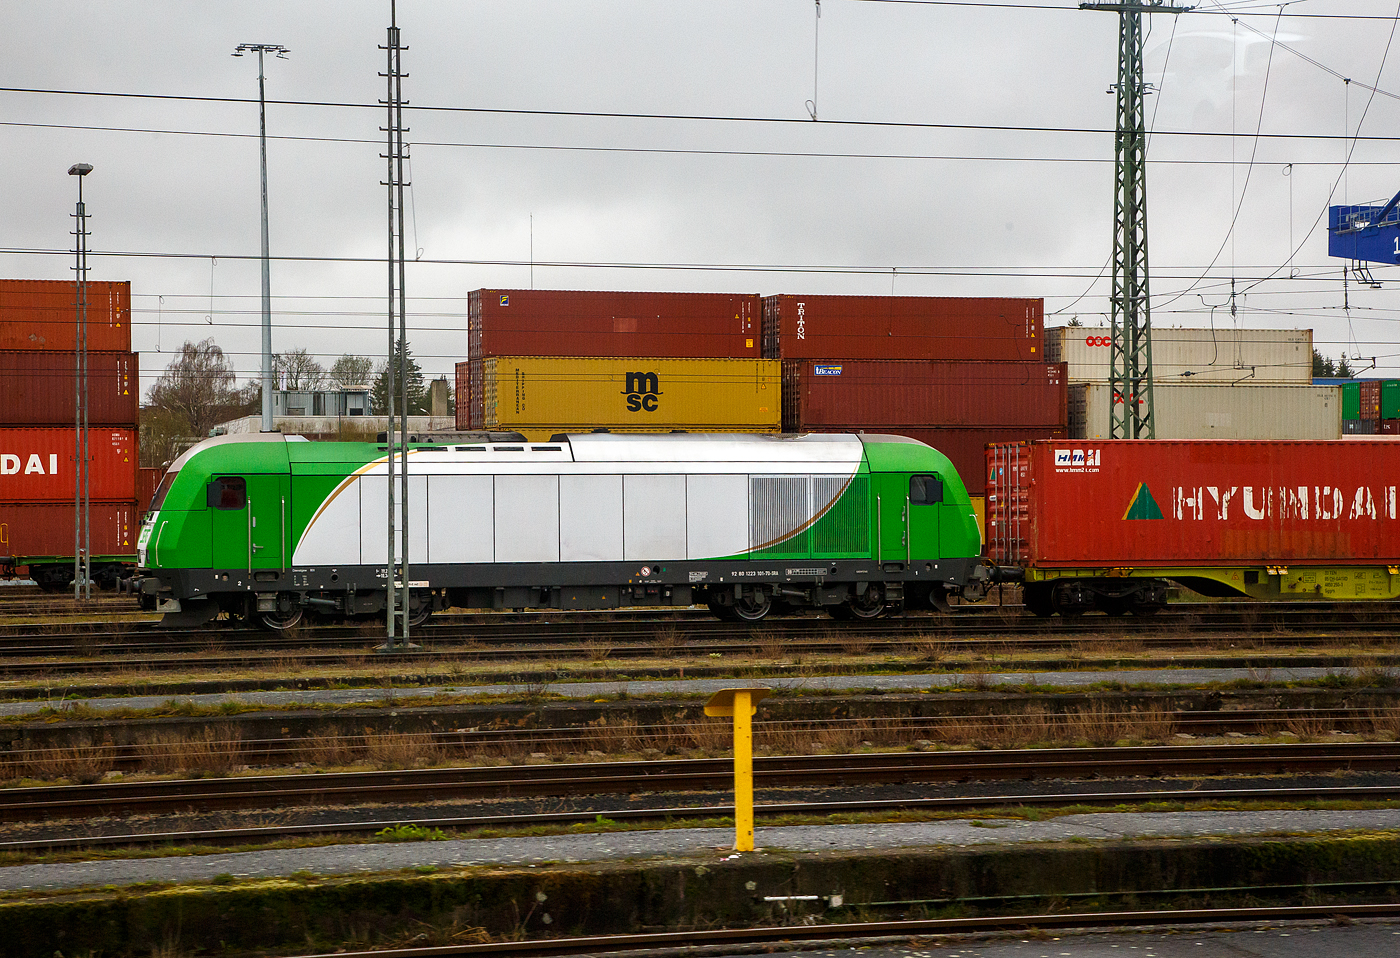 Die ER 20-02 alias 223 101-7 (92 80 1223 101-7 D-SRA) der Salzburger Eisenbahn TransportLogistik GmbH steht am 17.04.2023 mit einem Containerzug beim  Container Terminal Hof (CTH). Innerhalb des Netzwerks der Contargo Combitrac GmbH stellt das Containerterminal in Hof das „Tor zum Osten“ dar. Dank der günstigen geografischen Lage können von Hof aus sowohl Süd- und Mitteldeutschland, als auch Tschechien und Polen innerhalb kurzer Zeit erreicht werden.

Die Siemens ER 20 der Variante BF wurde 2007 von Siemens in München unter der Fabriknummer 21156 gebaut und als OHE 270080 an die Osthannoversche Eisenbahnen AG in Celle geliefert. Von 2012 bis 2017 lief sie dann als 2700 80 für OHE Cargo GmbH (92 80 1223 101-7 D-OHEGO, im März 2017 wurde sie dann an die Salzburger Eisenbahn TransportLogistik GmbH verkauft.

Die  Hercules   hat die Zulassung für Deutschland, Österreich und Tschechien.

TECHNISCHE DATEN:
Spurweite: 1.435 mm
Achsfolge: Bo'Bo'
Länge über Puffer 19.275 mm
Breite: 2.870 mm
Drehzapfenabstand: 10.362 mm
Achsabstand im Drehgestell: 2.700 mm
Treibraddurchmesser: 1.100 mm (neu) / 1.020 mm (abgenutzt)
Dieselmotor: 16-Zylinder-Dieselmotor mit Common-Rail-Einspritzung, zwei Turbolader und Ladeluftkühlung vom Typ 16 V 4000 R41
Leistung: 2.000 kW
Nenndrehzahl: 600 - 1.800 U/min
Leistungsübertragung:  dieselelektrisch
Höchstgeschwindigkeit: 140 km/h
Leergewicht: 80 t
Kleinster bef. Halbmesser: 100 m
Zugheizung: 400 kW
Anfahrzugkraft: 235 kN
Tankinhalt bei Variante BF: 4.000 Liter (BU 2.500 Liter)